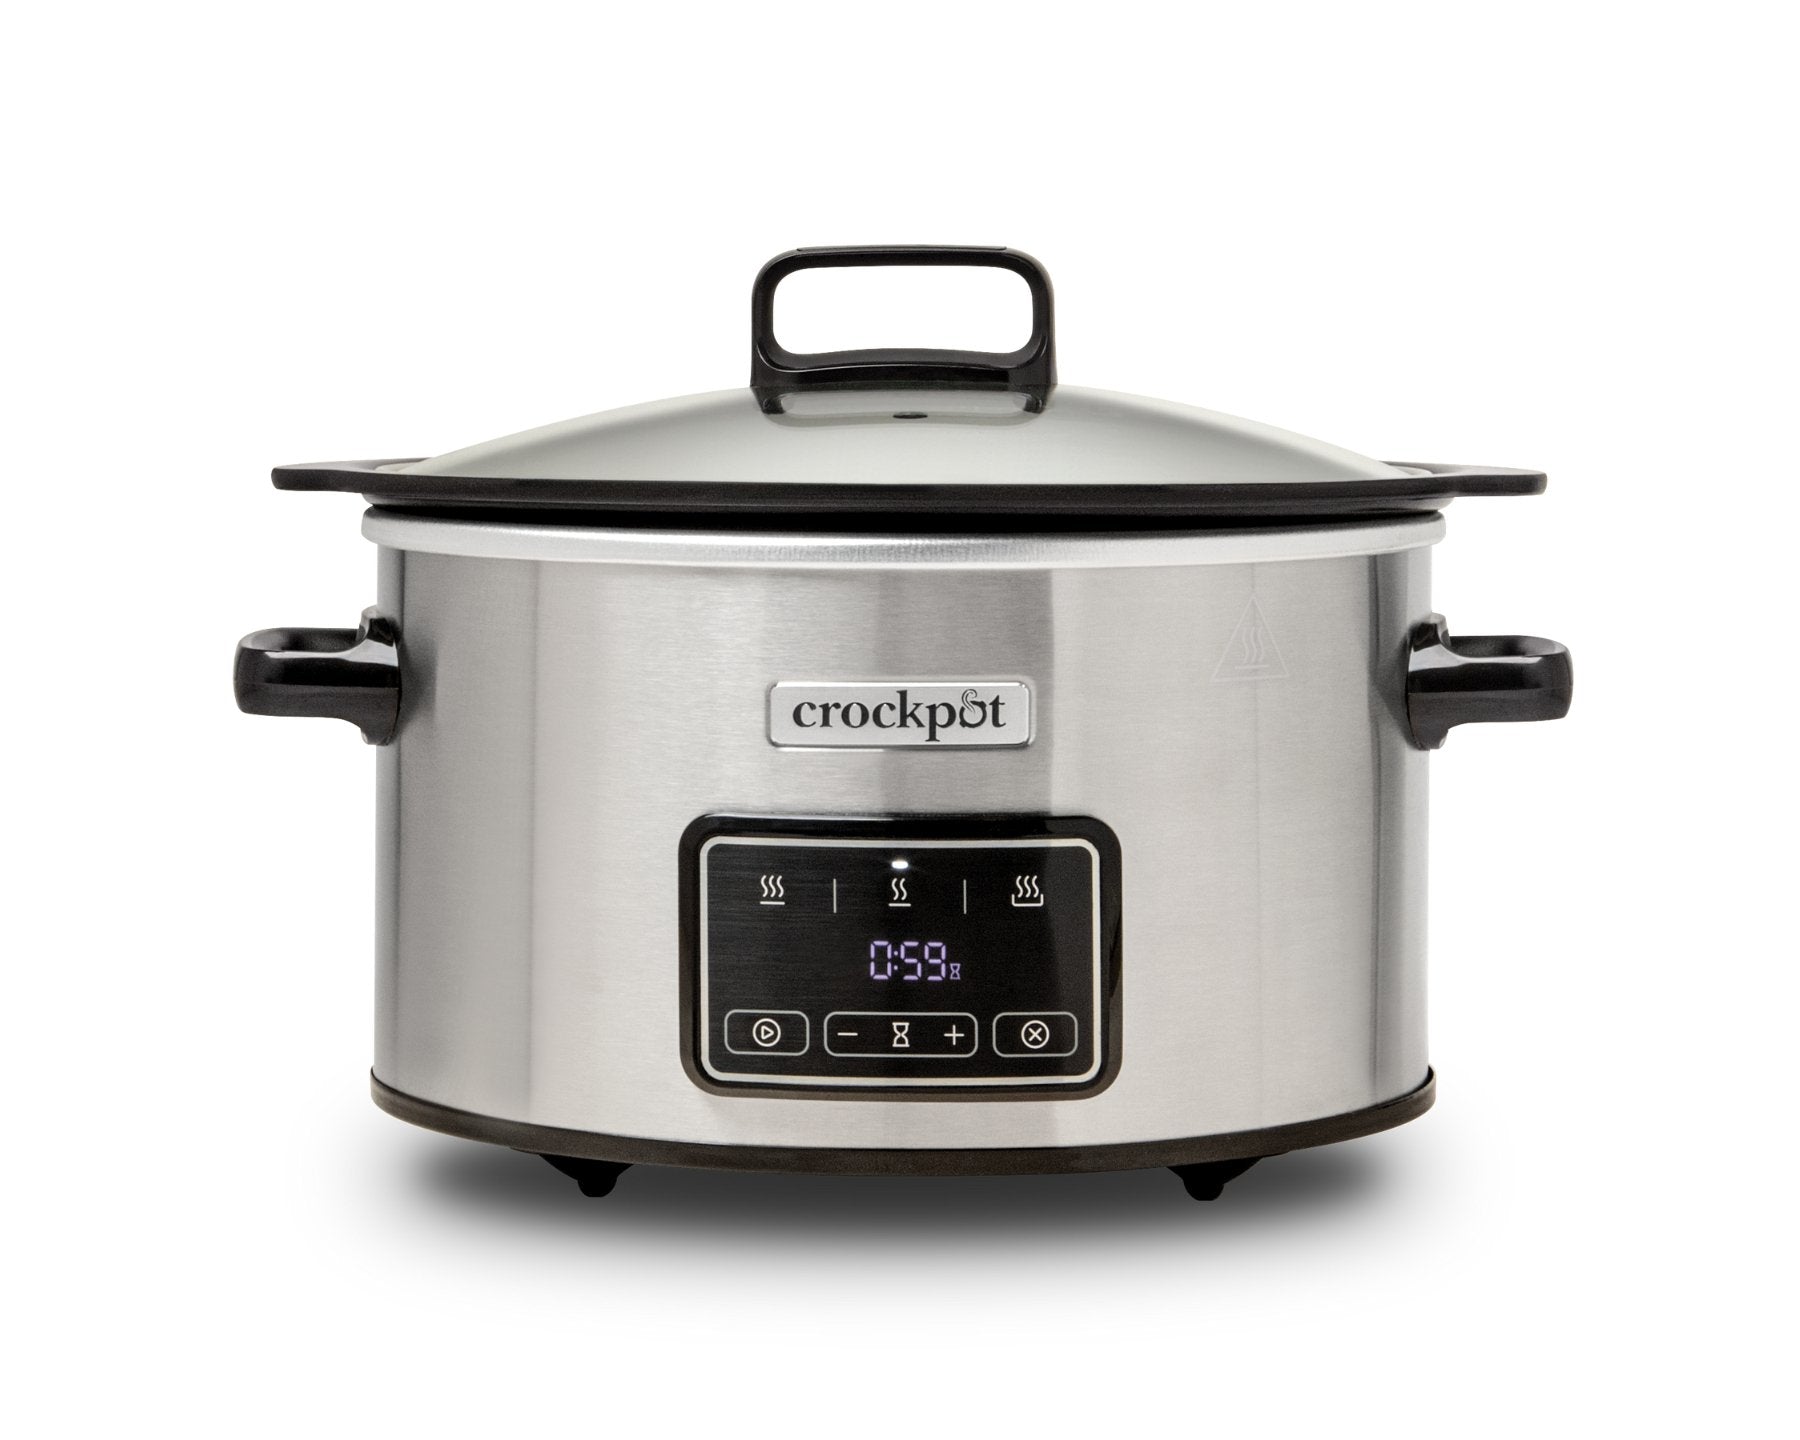 Crock pot Sizzle & Stew, 3.5L slow cooker